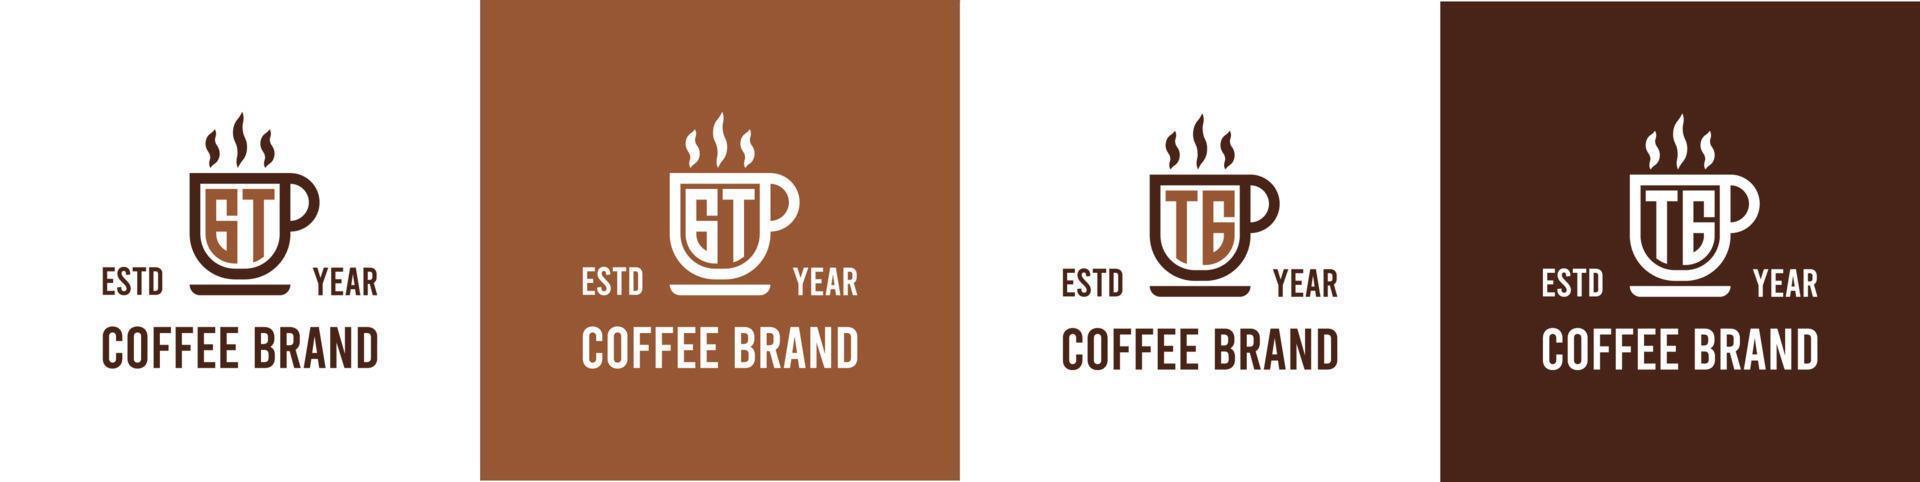 brief gt en tg koffie logo, geschikt voor ieder bedrijf verwant naar koffie, thee, of andere met gt of tg initialen. vector